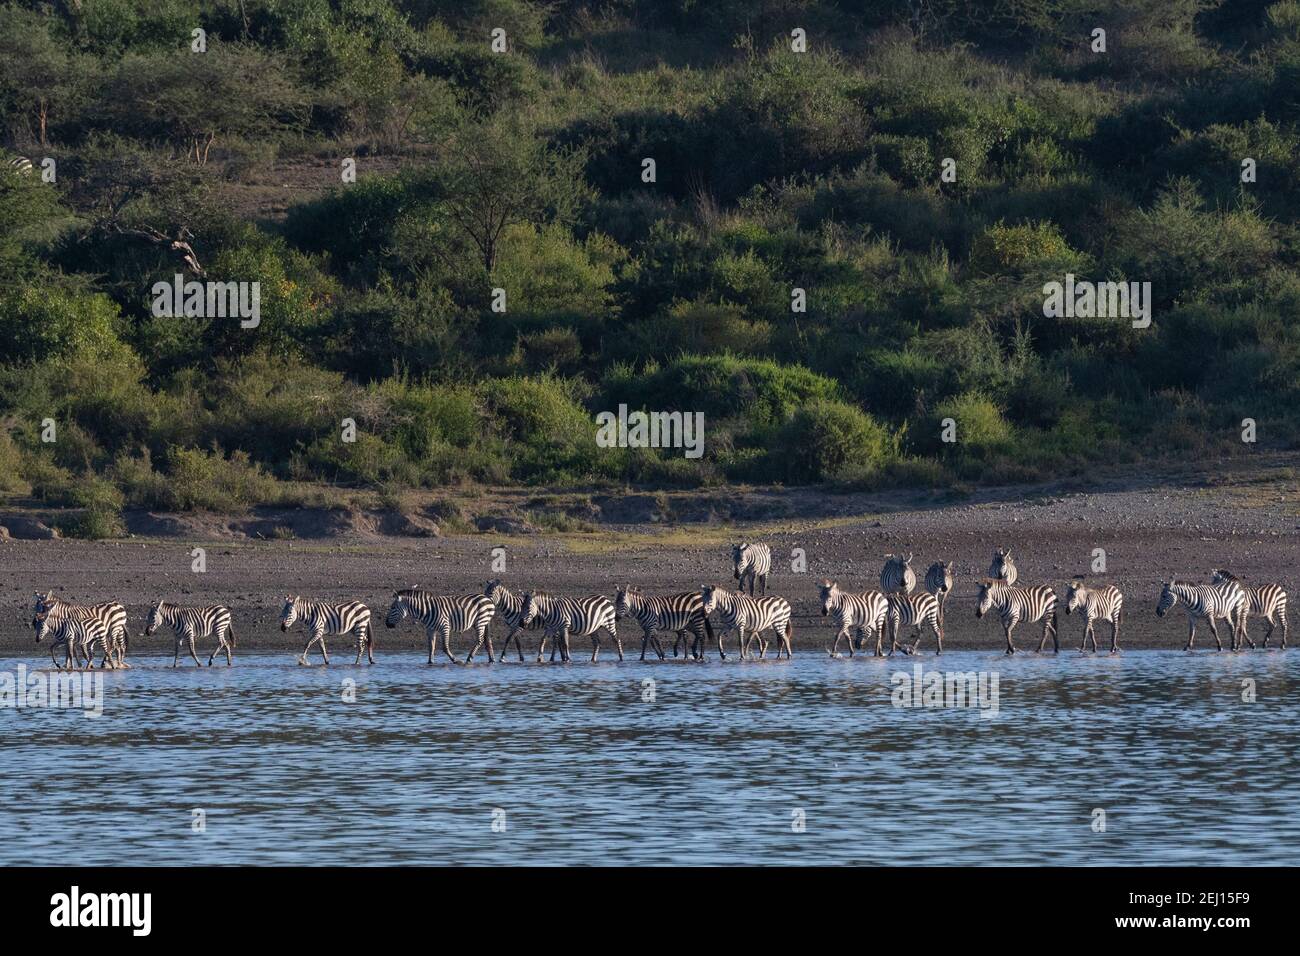 Zèbres communes (Equus quagga) traversant le lac Ndutu, zone de conservation de Ngorongoro, Serengeti, Tanzanie. Banque D'Images